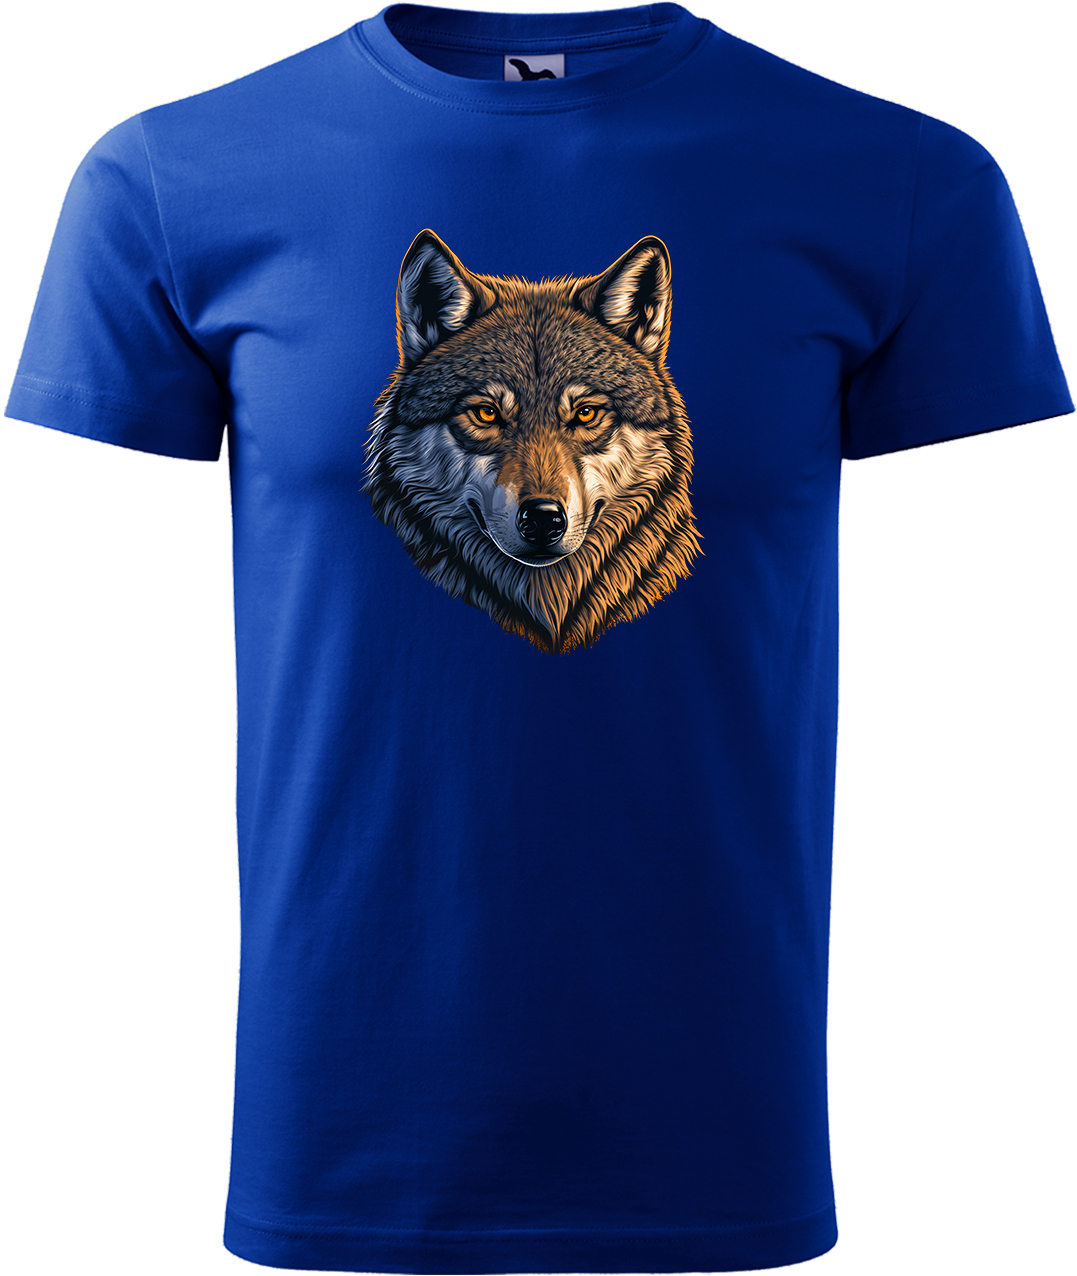 Pánské tričko s vlkem - Hlava vlka Velikost: S, Barva: Královská modrá (05), Střih: pánský